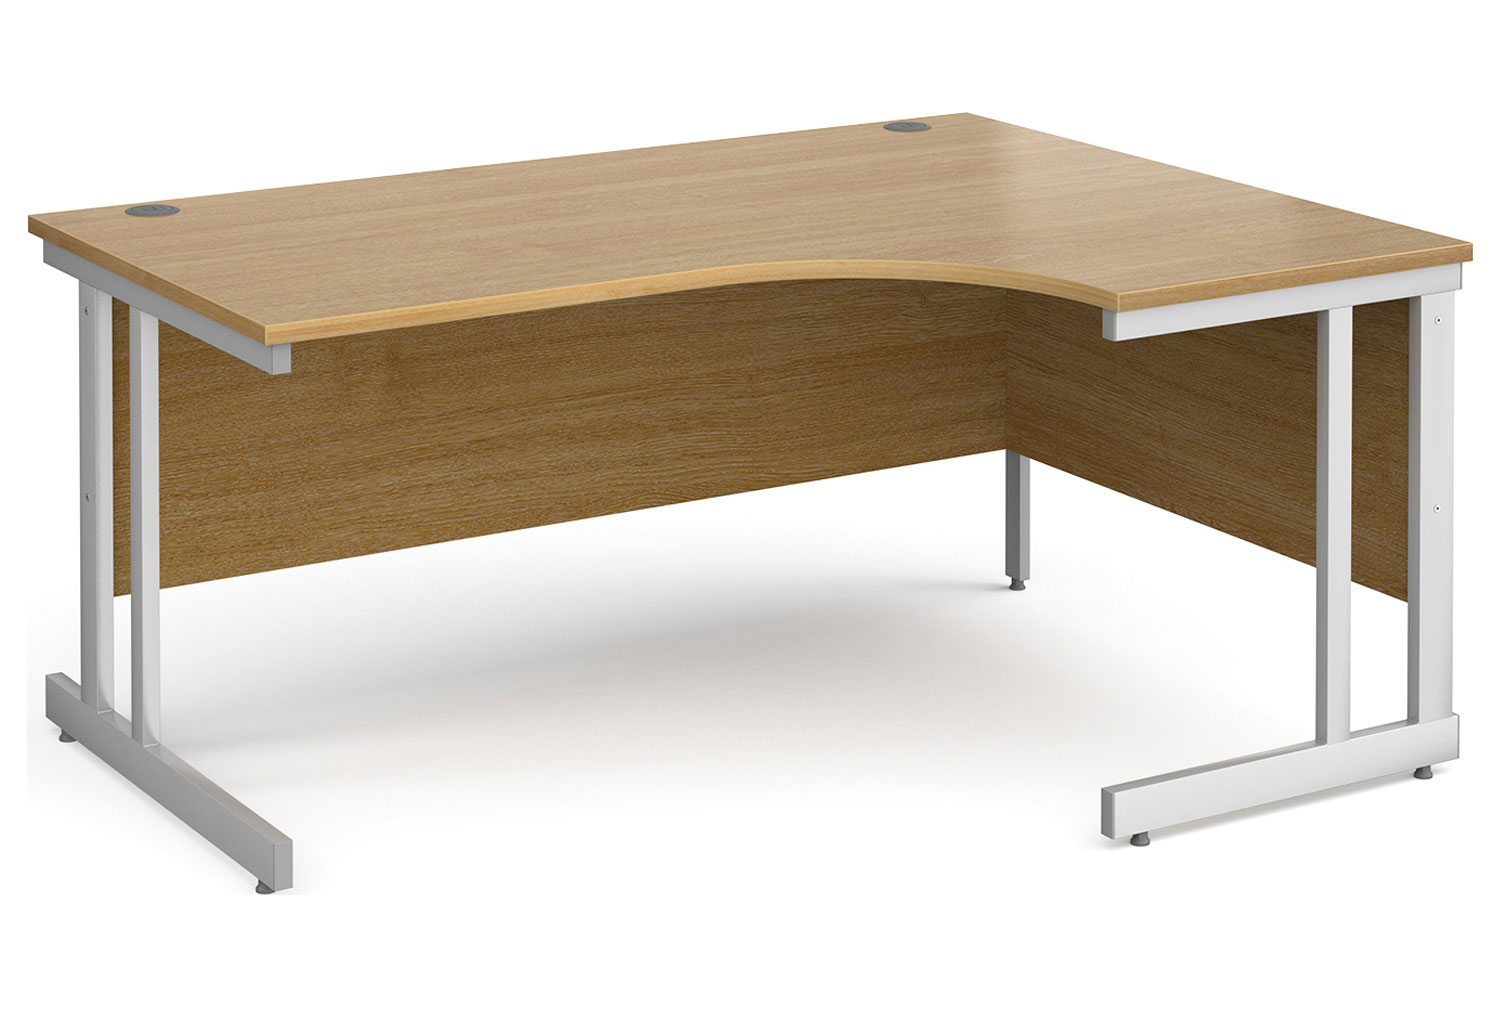 All Oak Double C-Leg Ergonomic Right Hand Office Desk, 160wx120/80dx73h (cm), Fully Installed